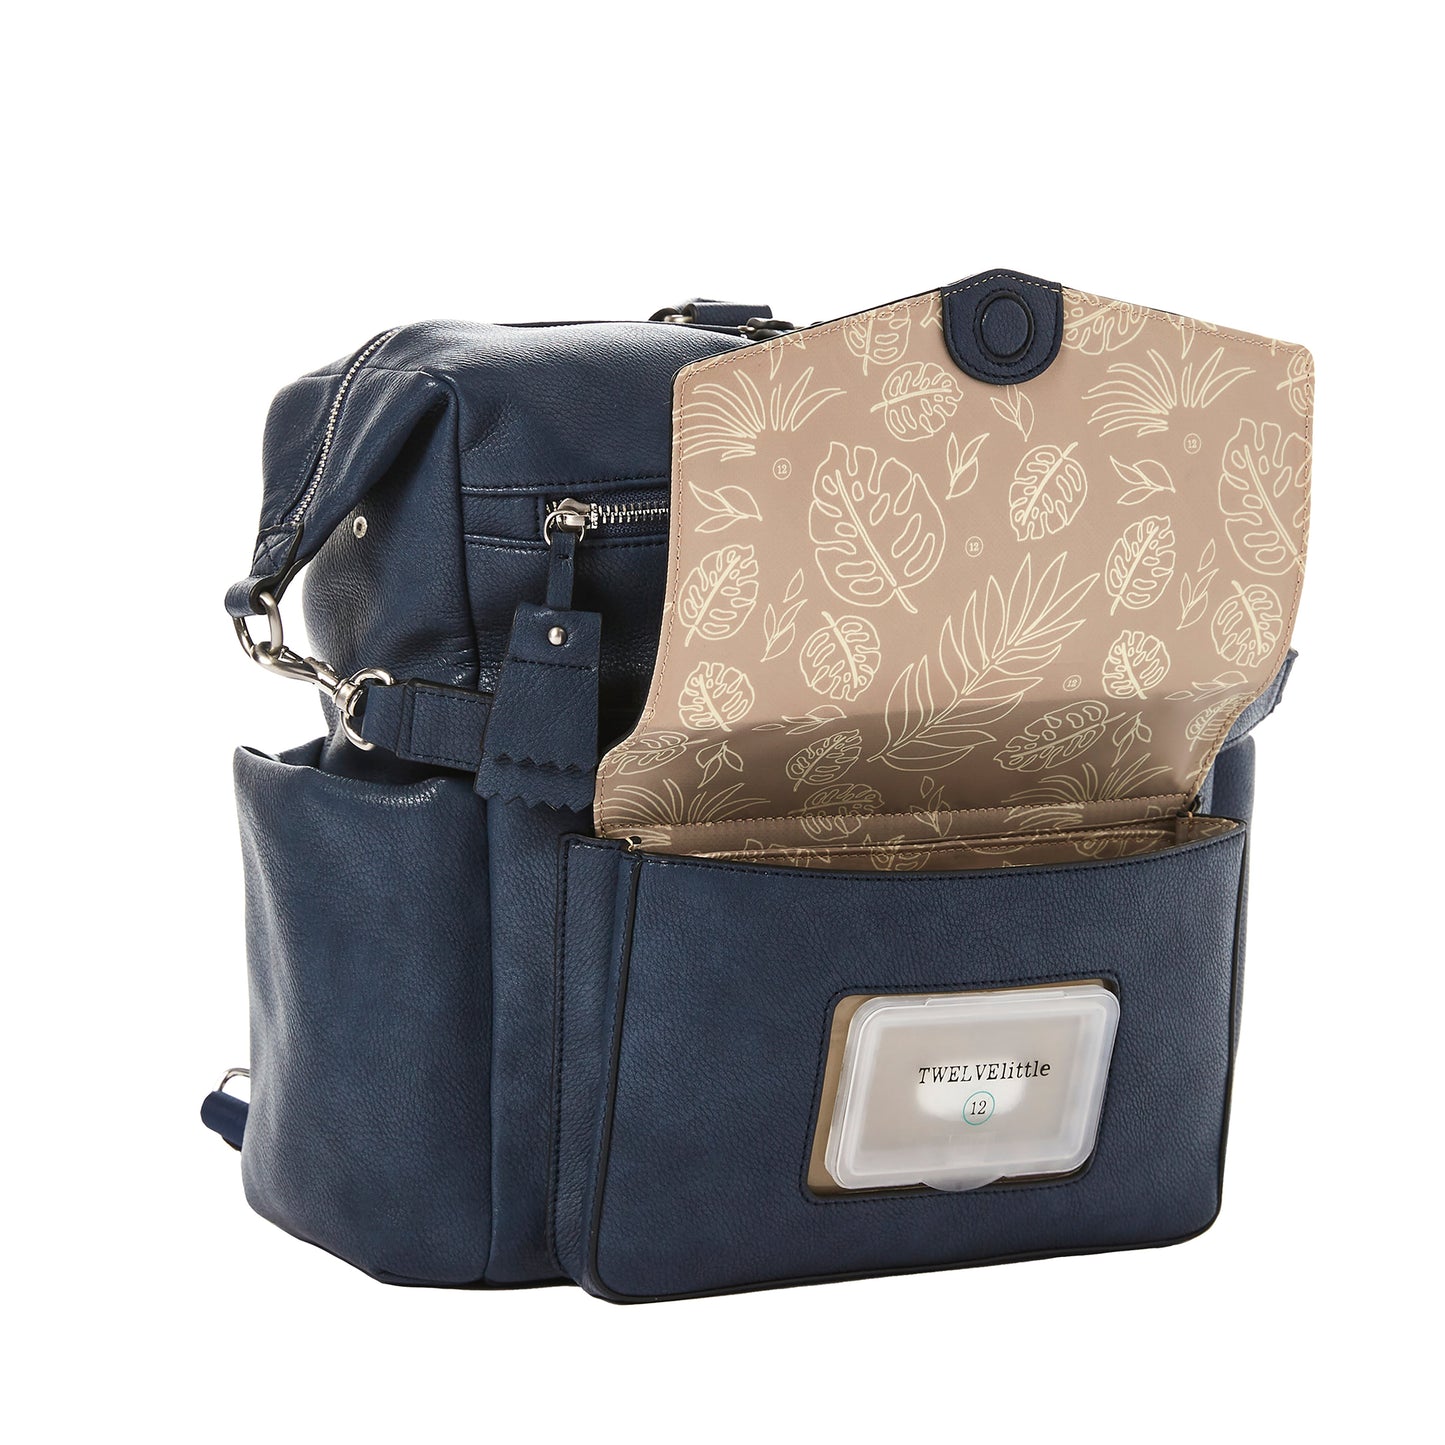 PEEK A BOO HOBO  backpack |תיק גב |כחול